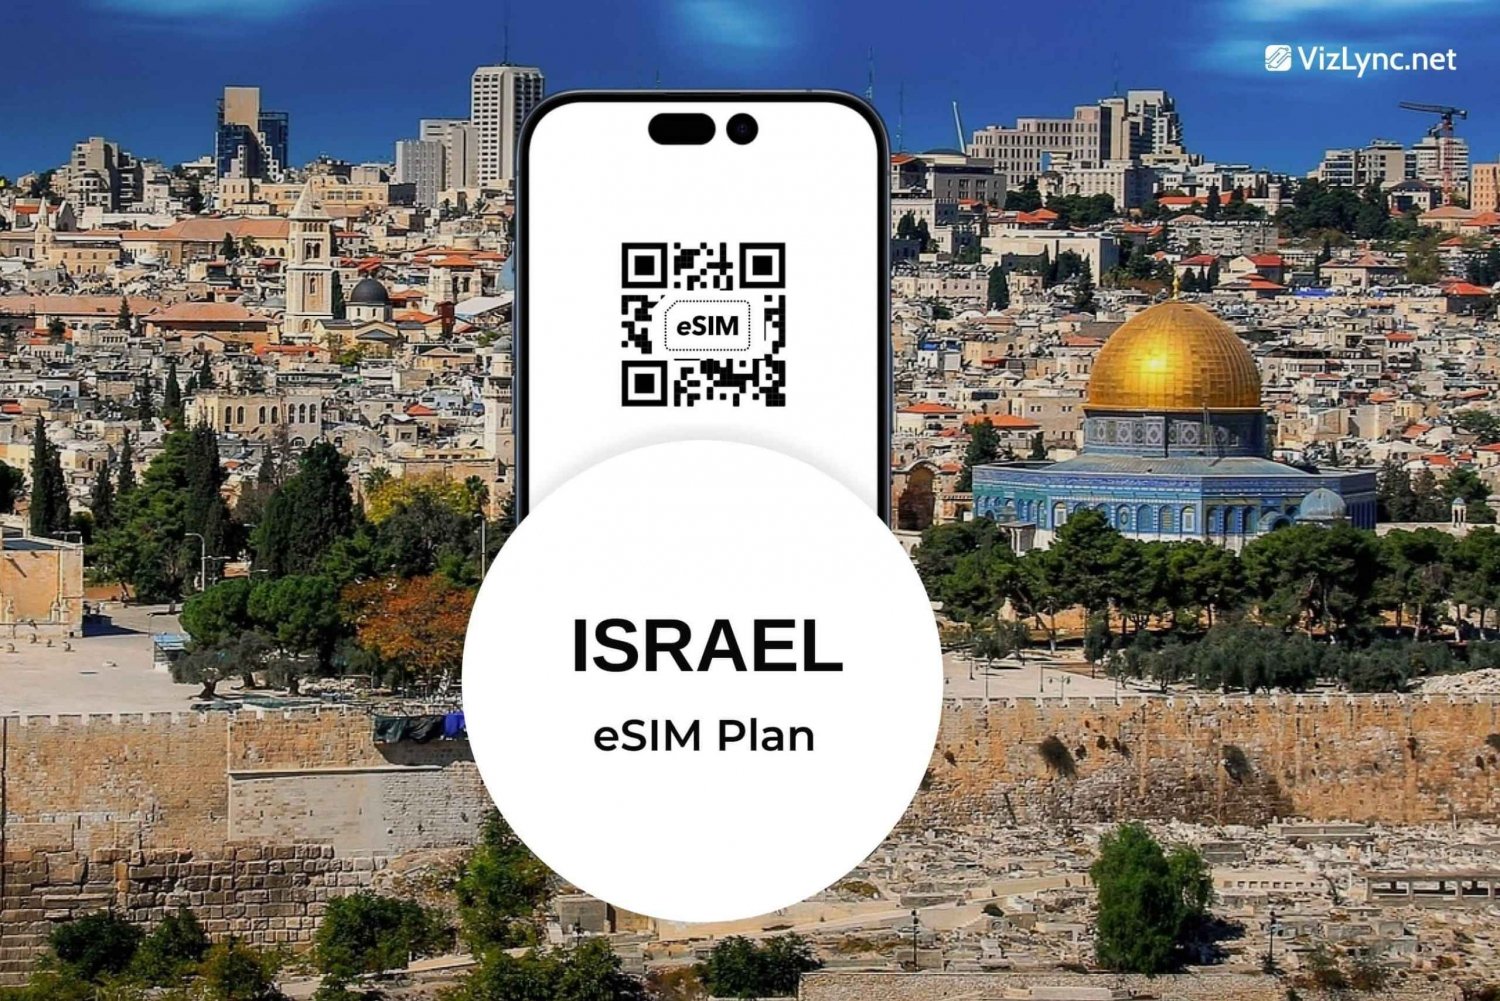 Plano Israel Travel eSIM com dados móveis super rápidos